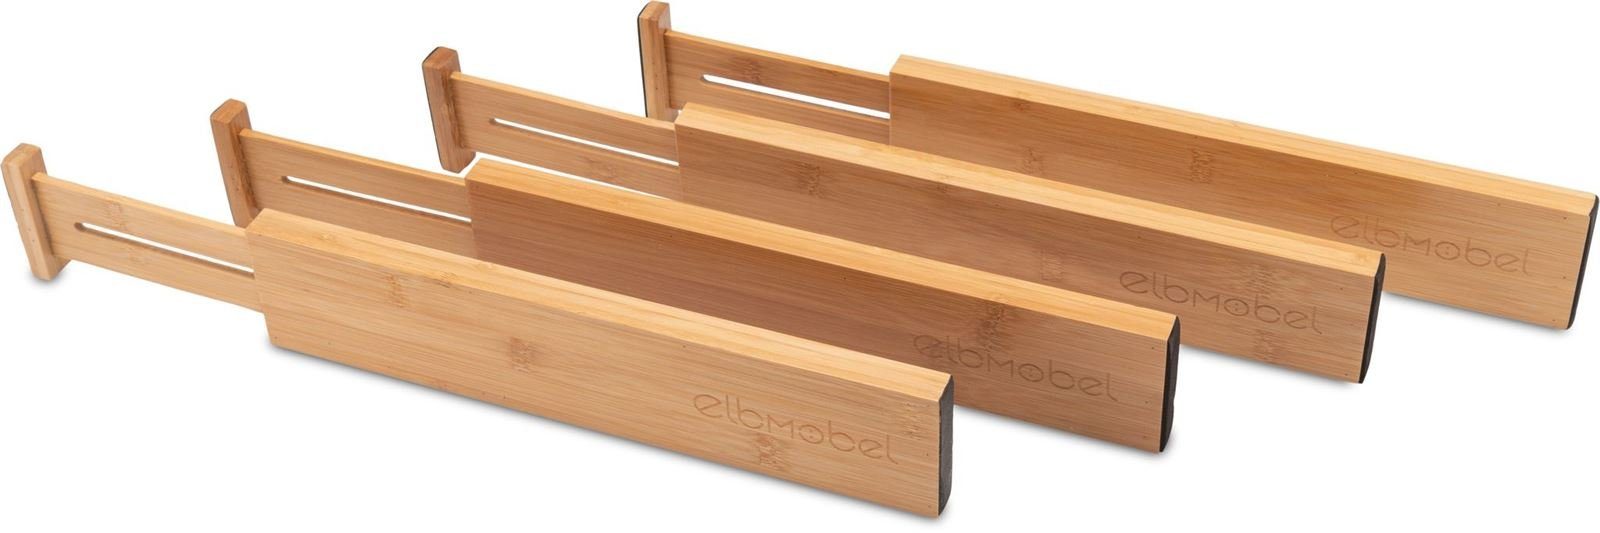 elbmöbel Schubladeneinsatz Elbmöbel Schubladentrenner groß Ordnungssystem Bambus 4er Pack Groß (4 er Set)